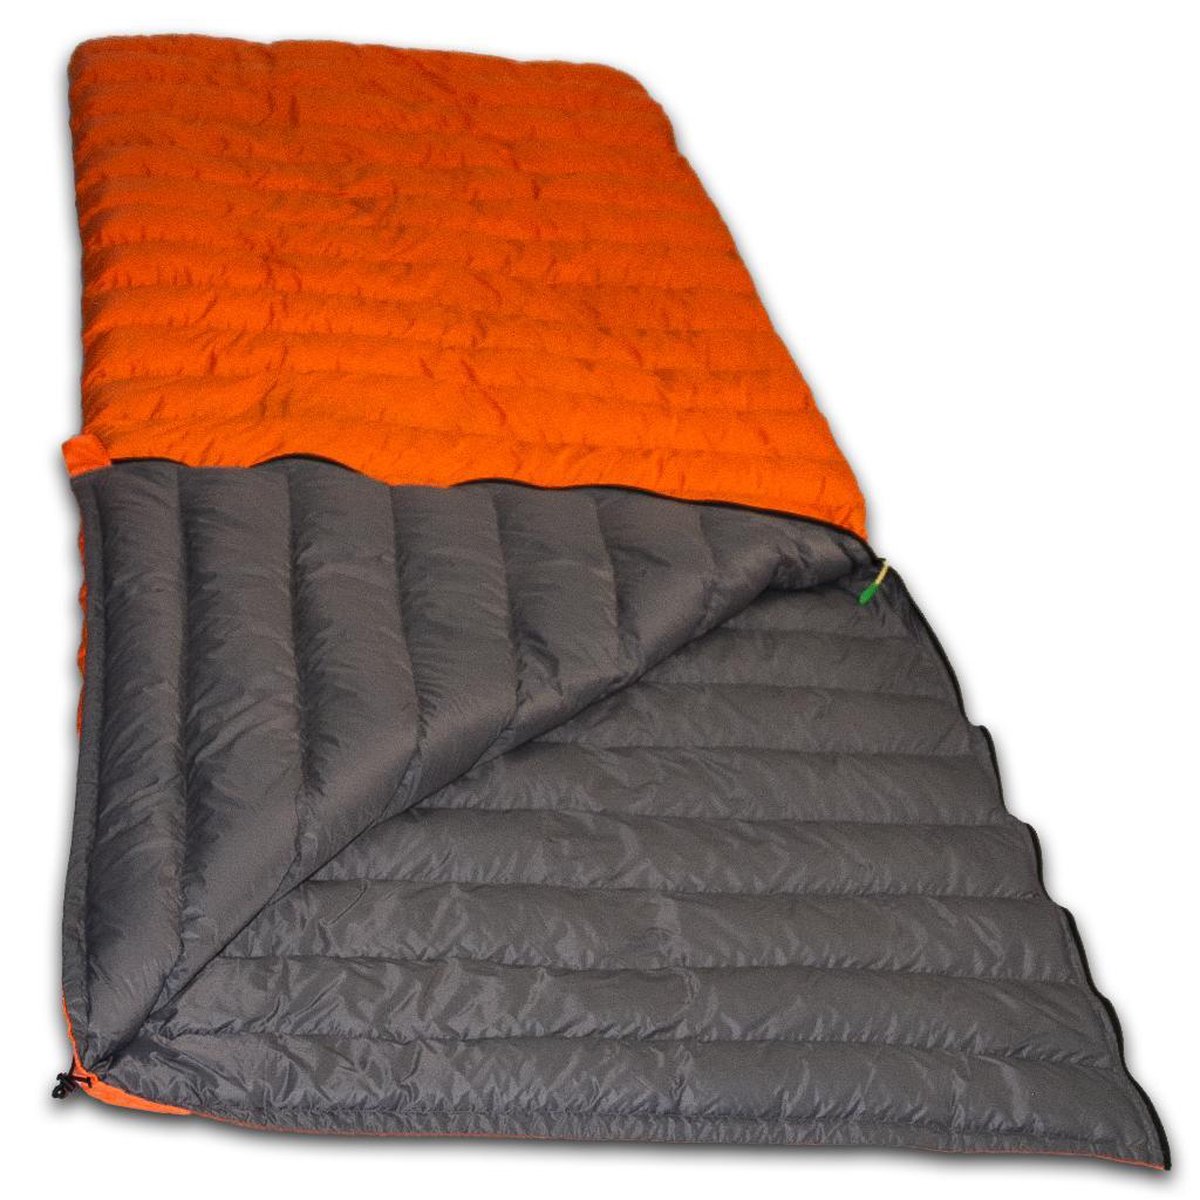 LOWLAND OUTDOOR® Donzen slaapzak - Super compact blanket - 210 x 80 cm - 590gr +8°C